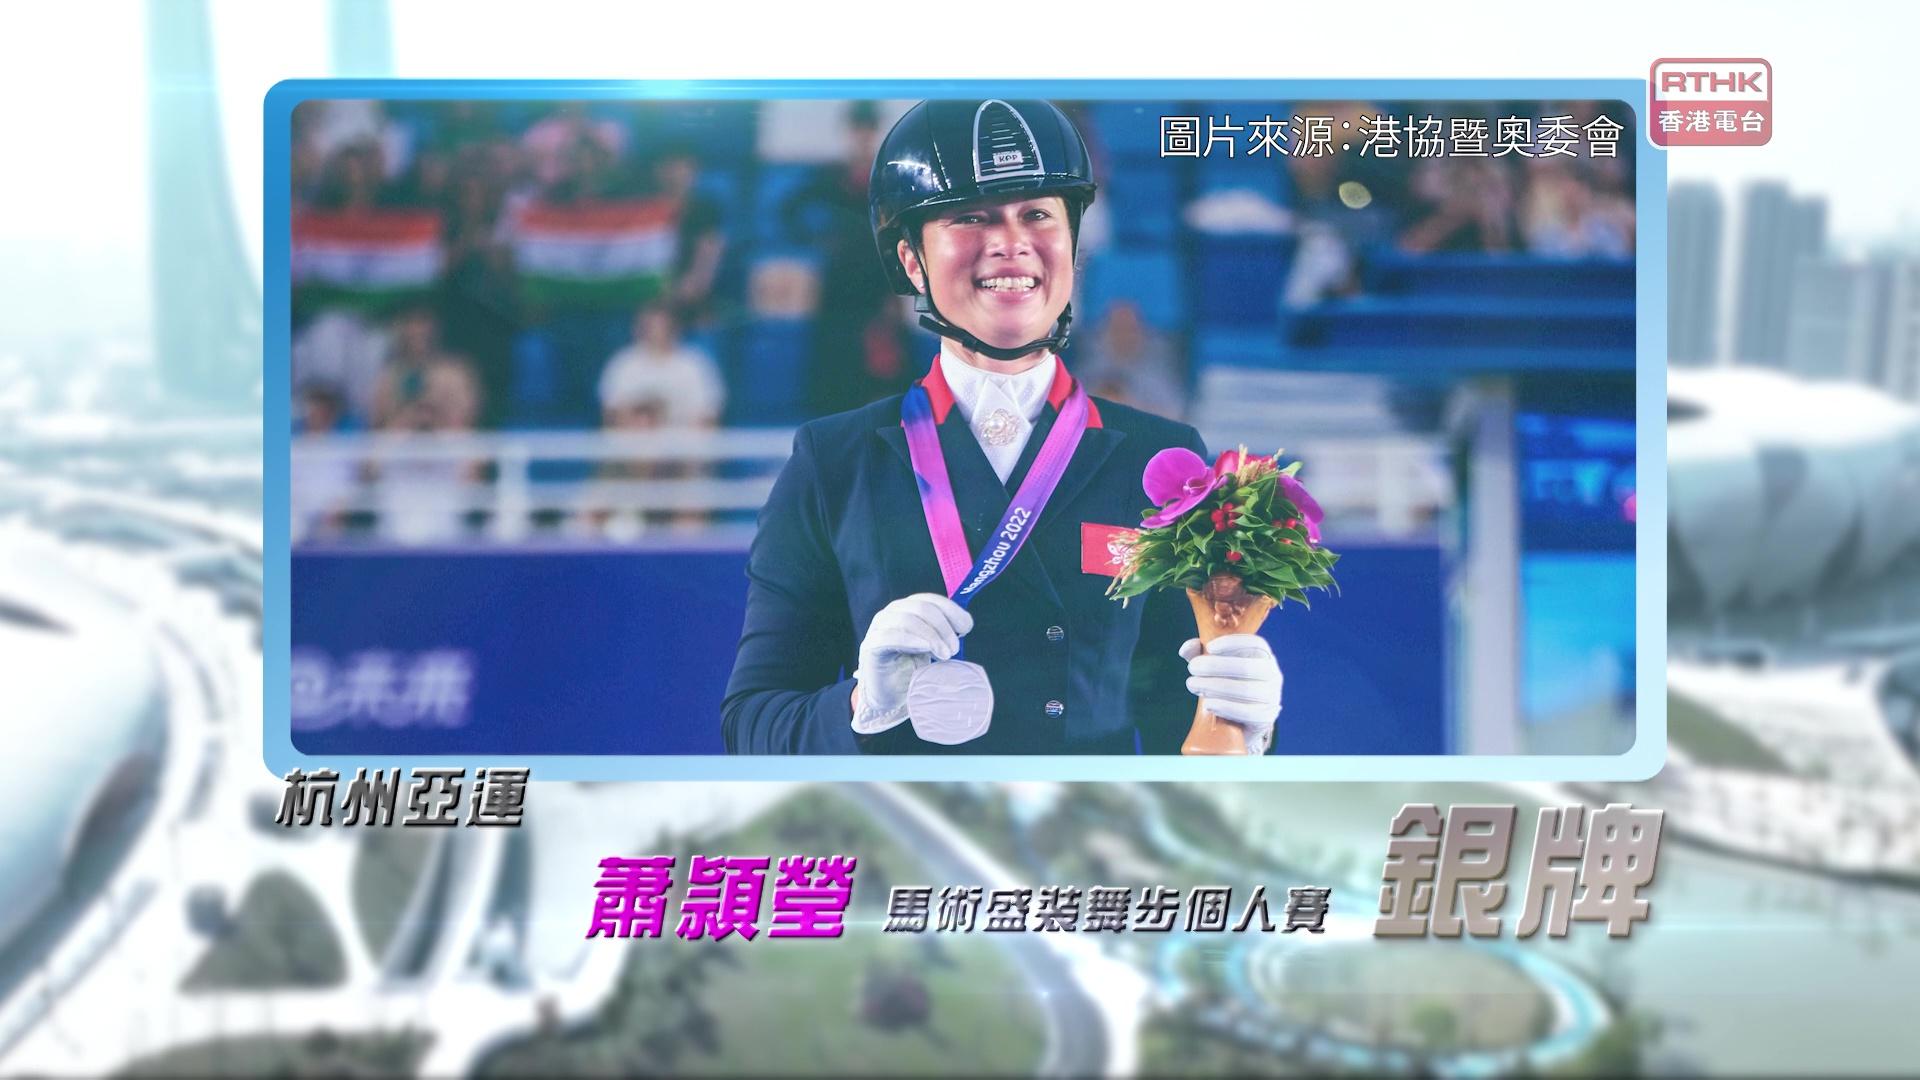 恭喜萧頴莹于杭州亚运马术盛装舞步个人赛取得银牌